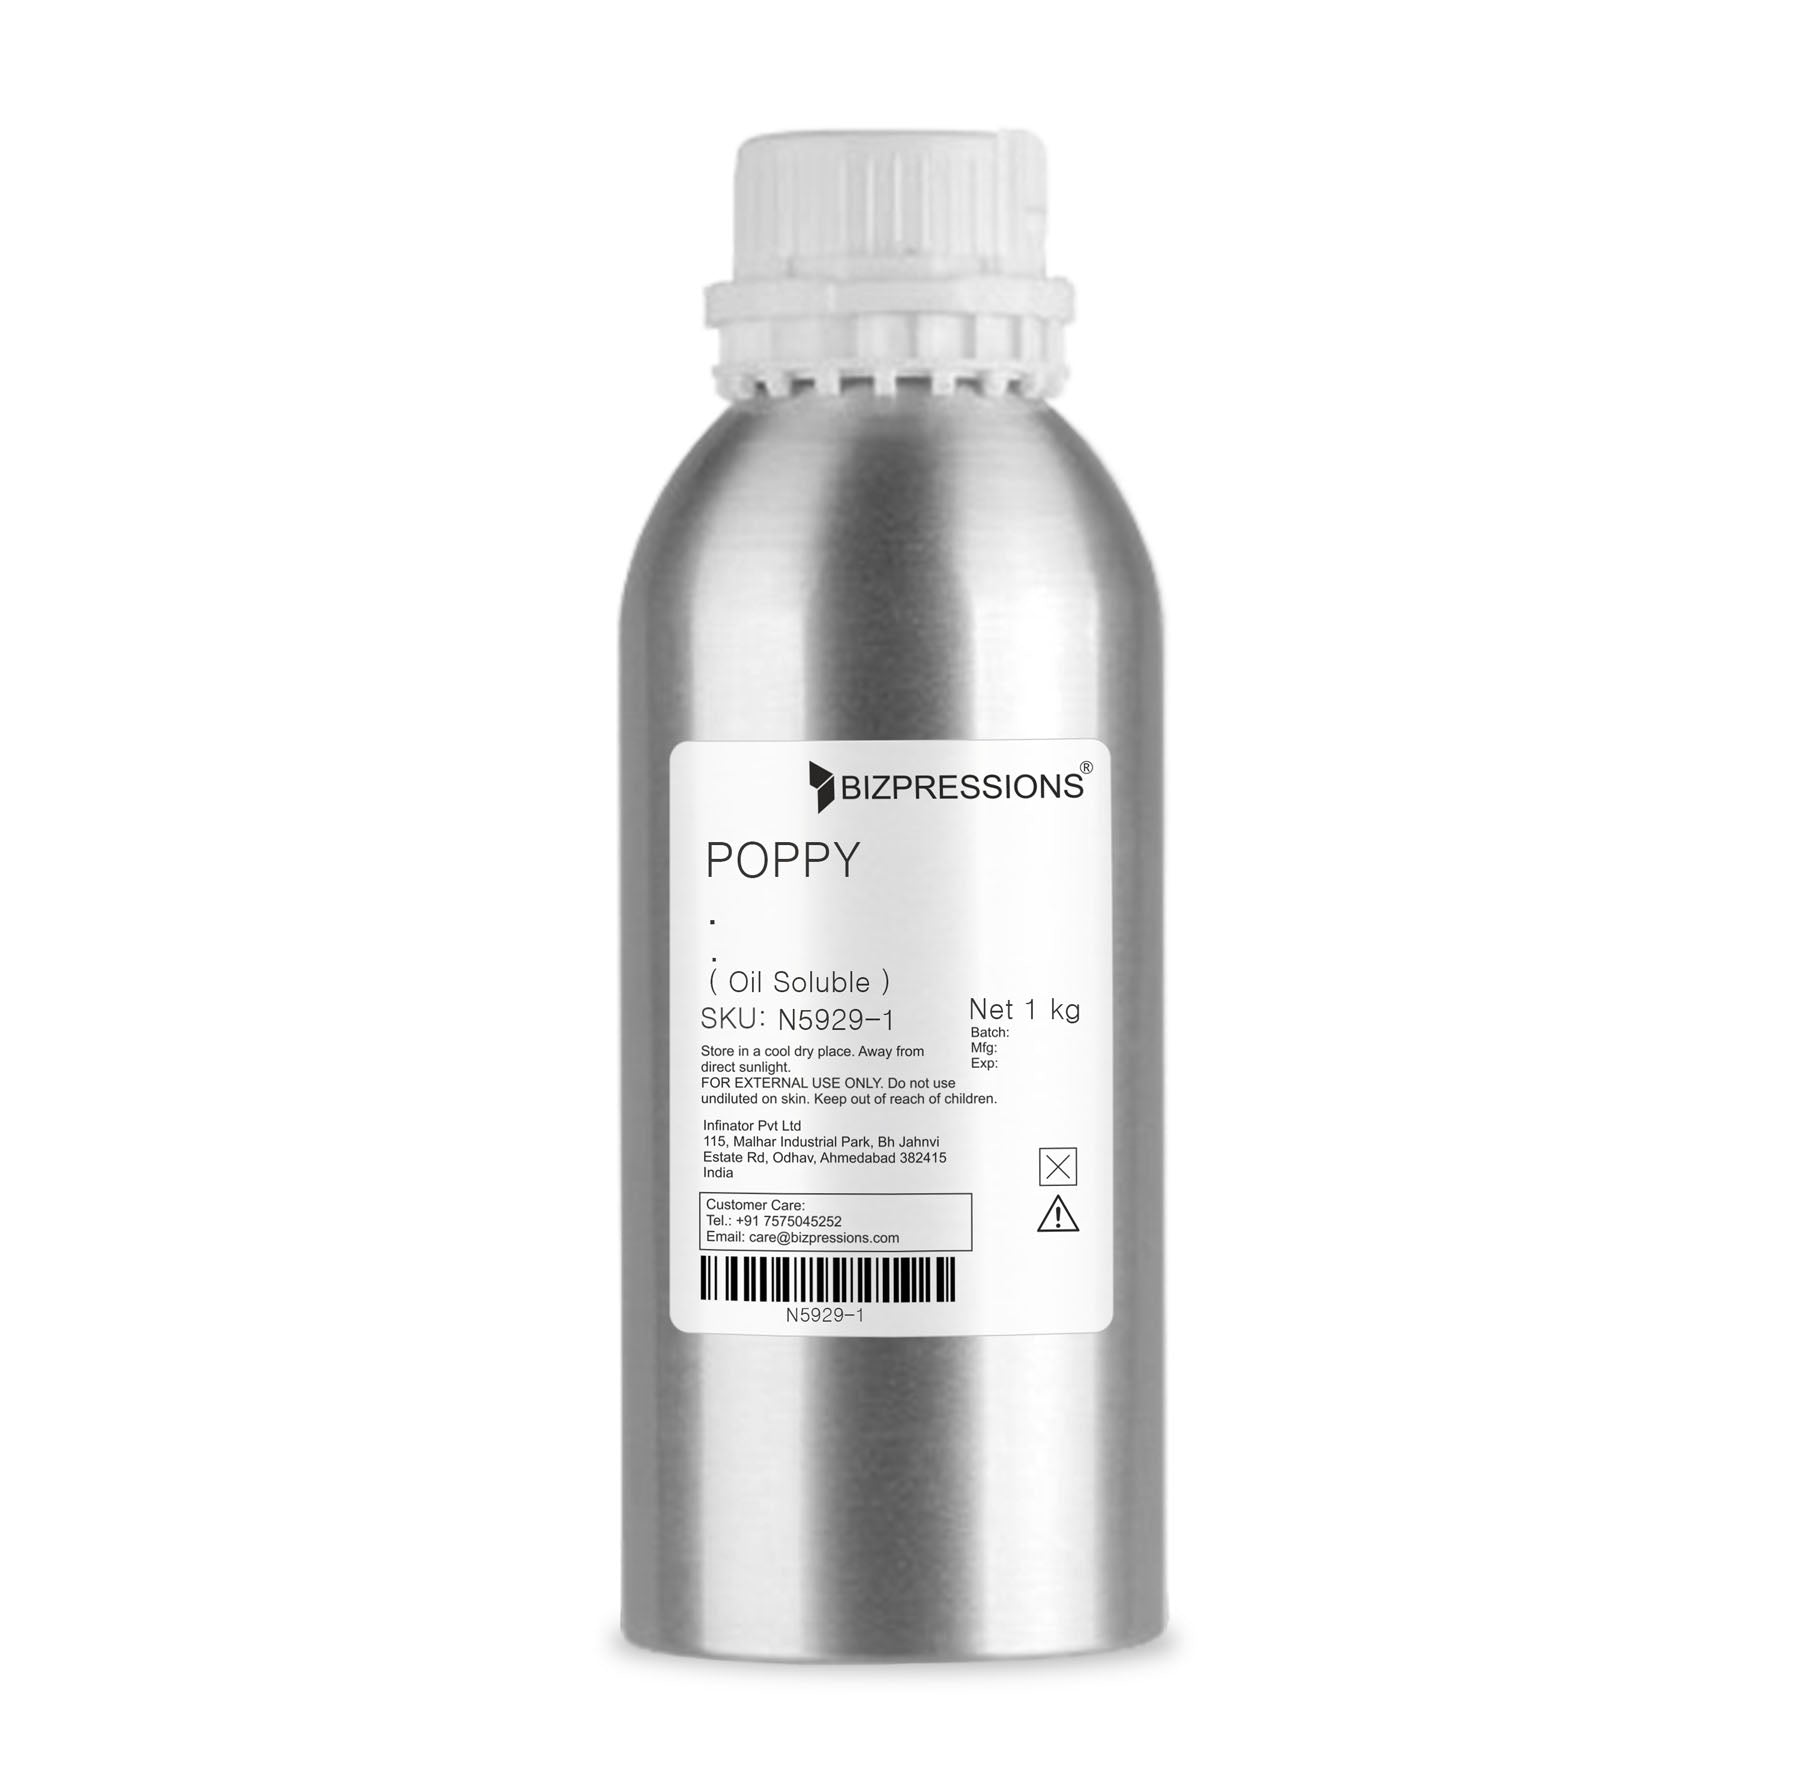 POPPY - Fragrance ( Oil Soluble ) - 1 kg